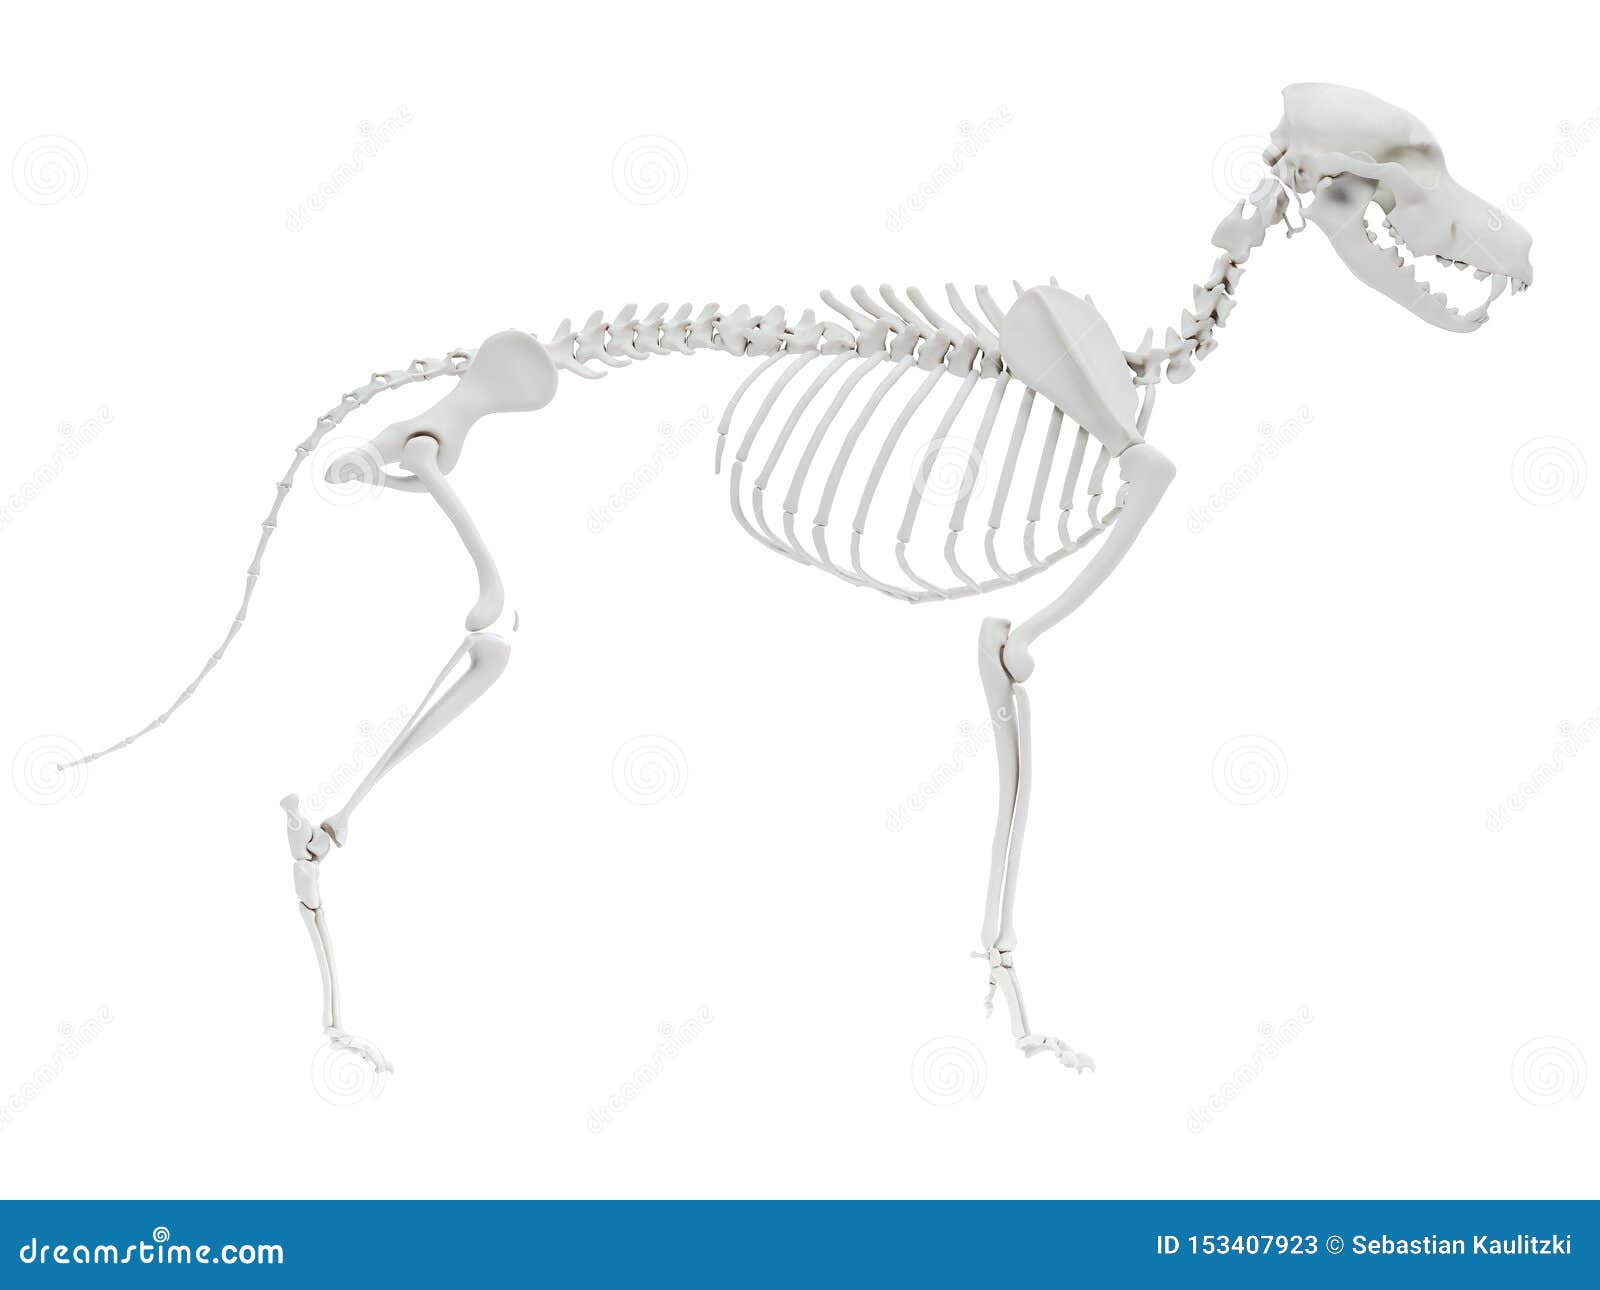 图书馆典藏的艺用动物解剖集PDF，制作动物模型的重要资料 - 犬的肌肉解剖图 - 实验室设备网